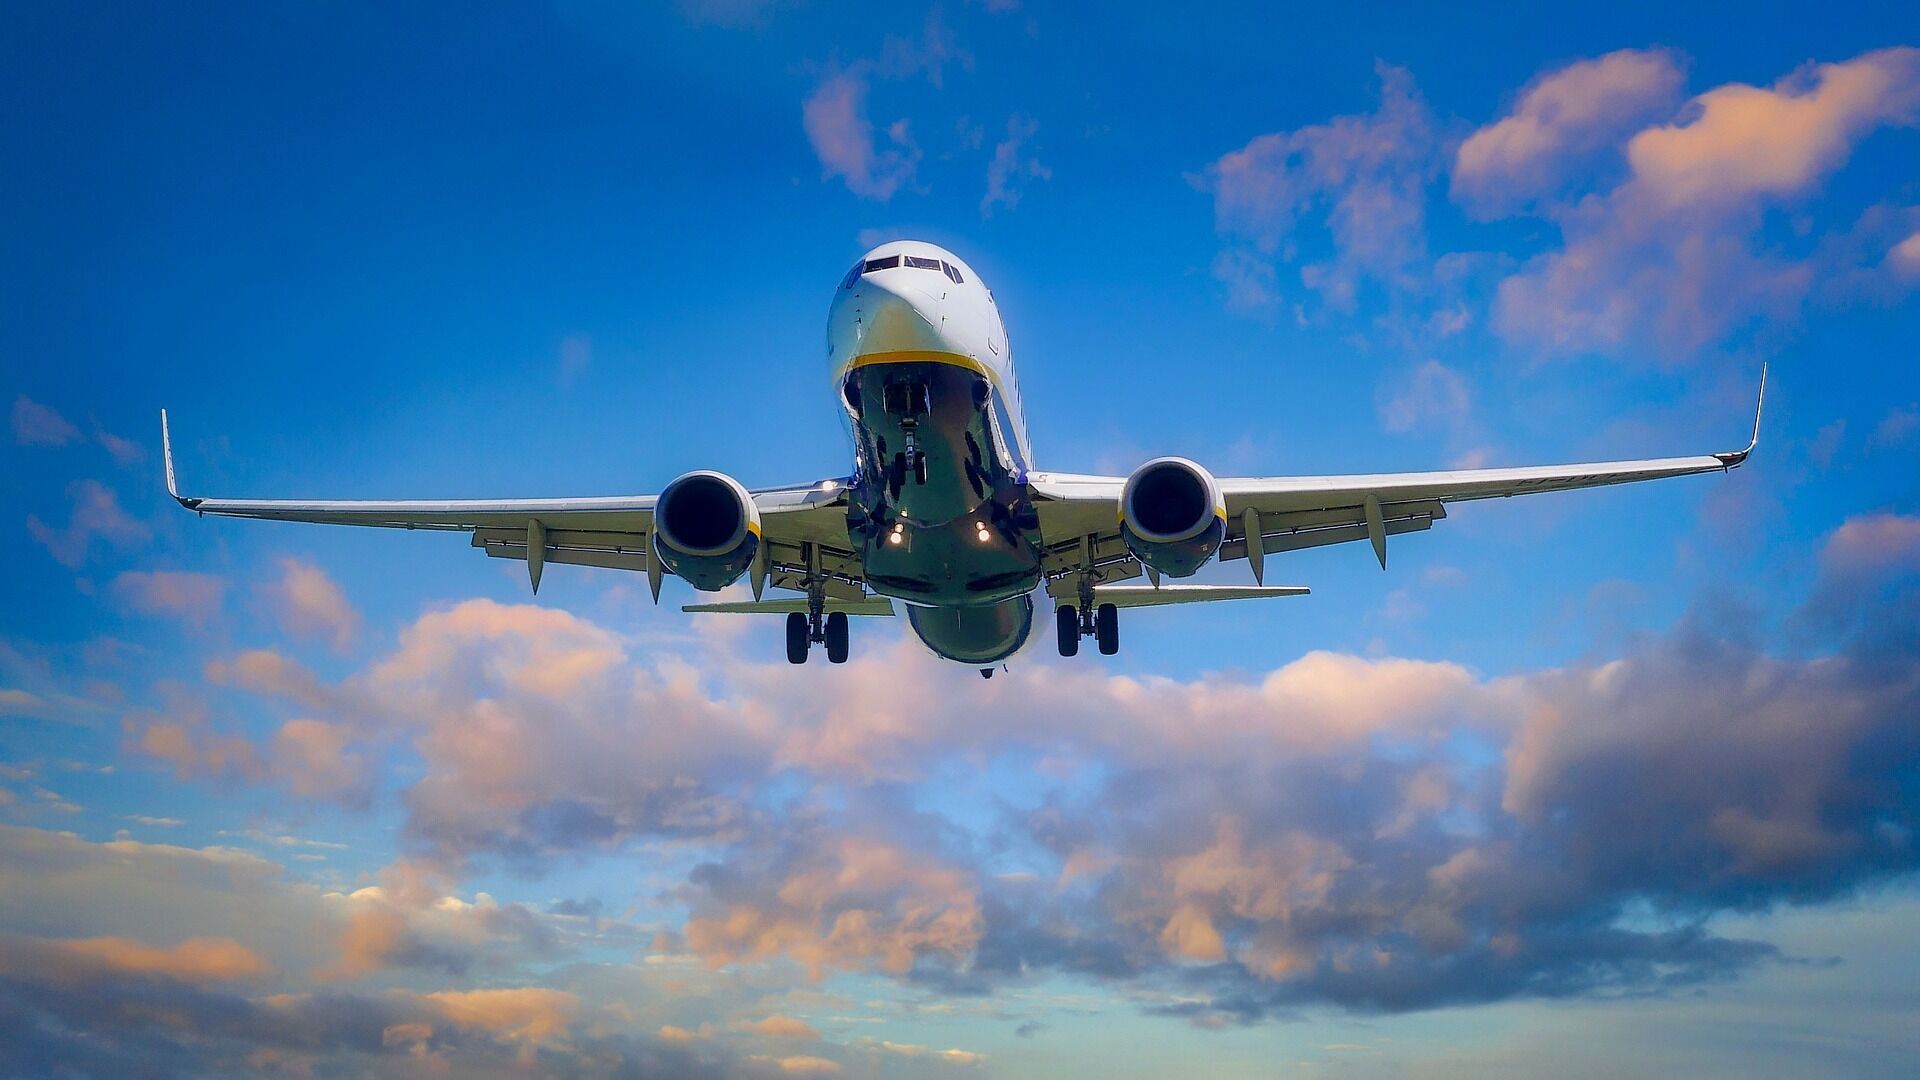 Пунктуальность – не их фишка: рейсы каких авиакомпаний задерживаются чаще всего